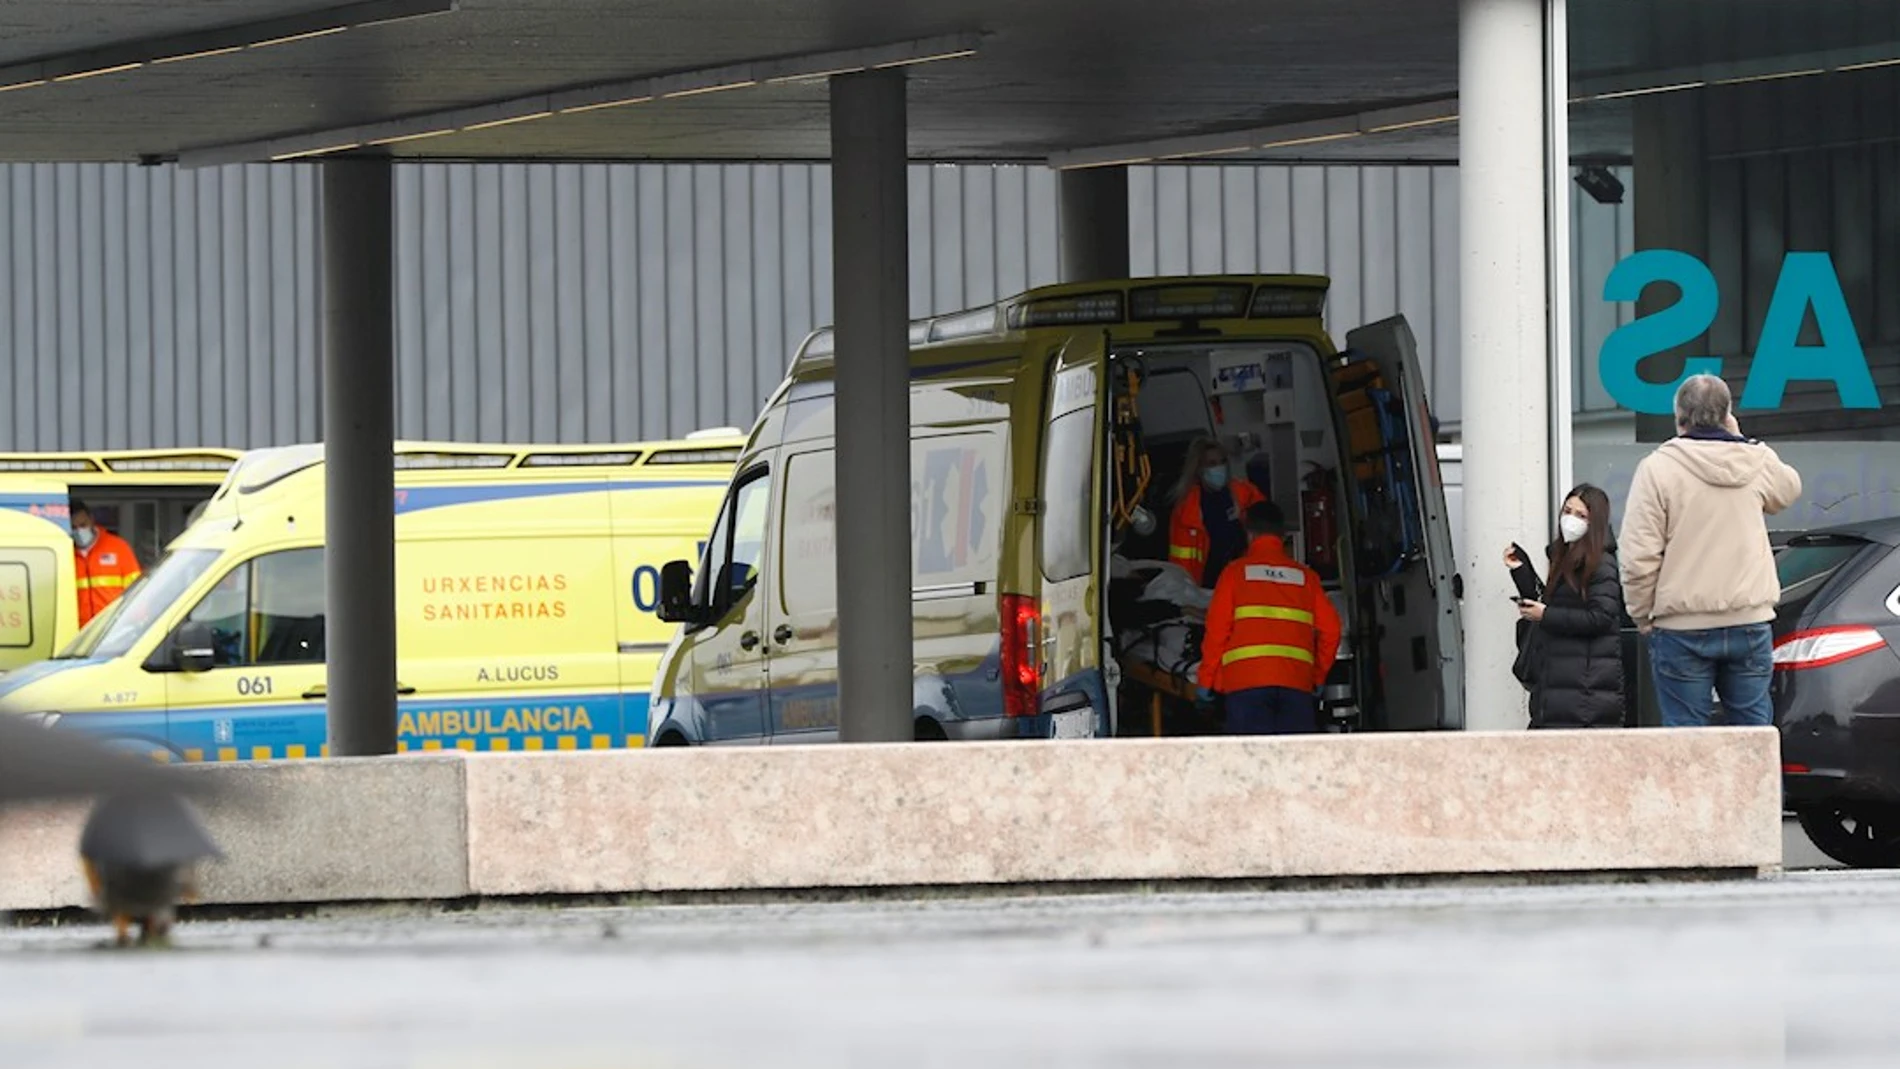 Ambulancias en la zona de urgencias del hospital HULA, Lugo, en una fotografía de archivo.